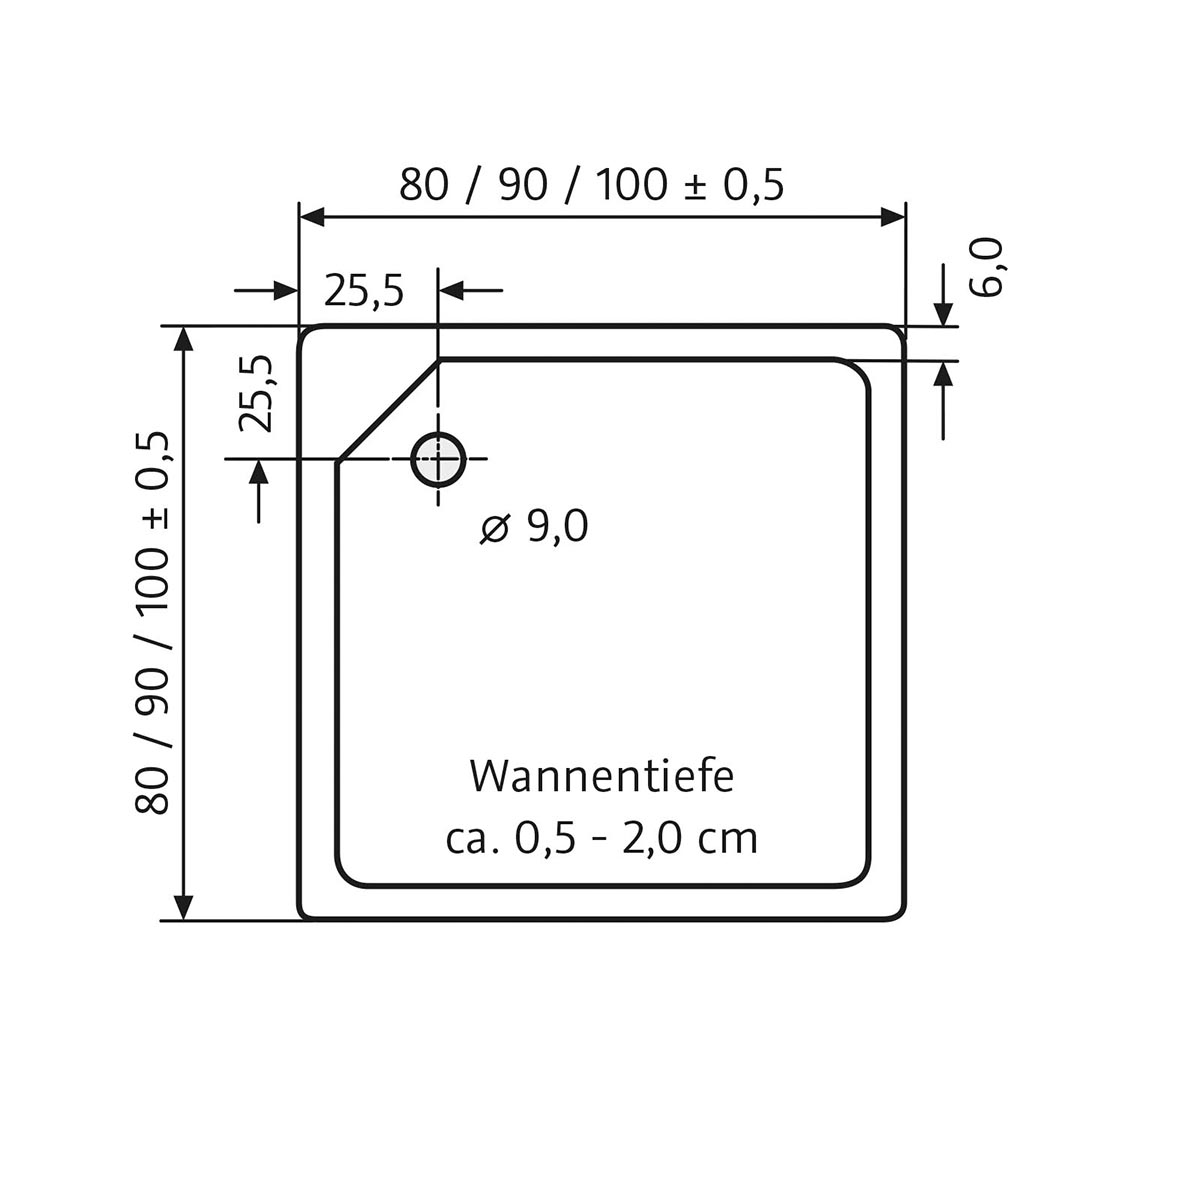 HSK Marmor-Polymer Quadrat Duschwanne superflach-Weiß-100 x 100 cm-mit AntiSlip-Beschichtung-mit Aquaproof-Dichtset